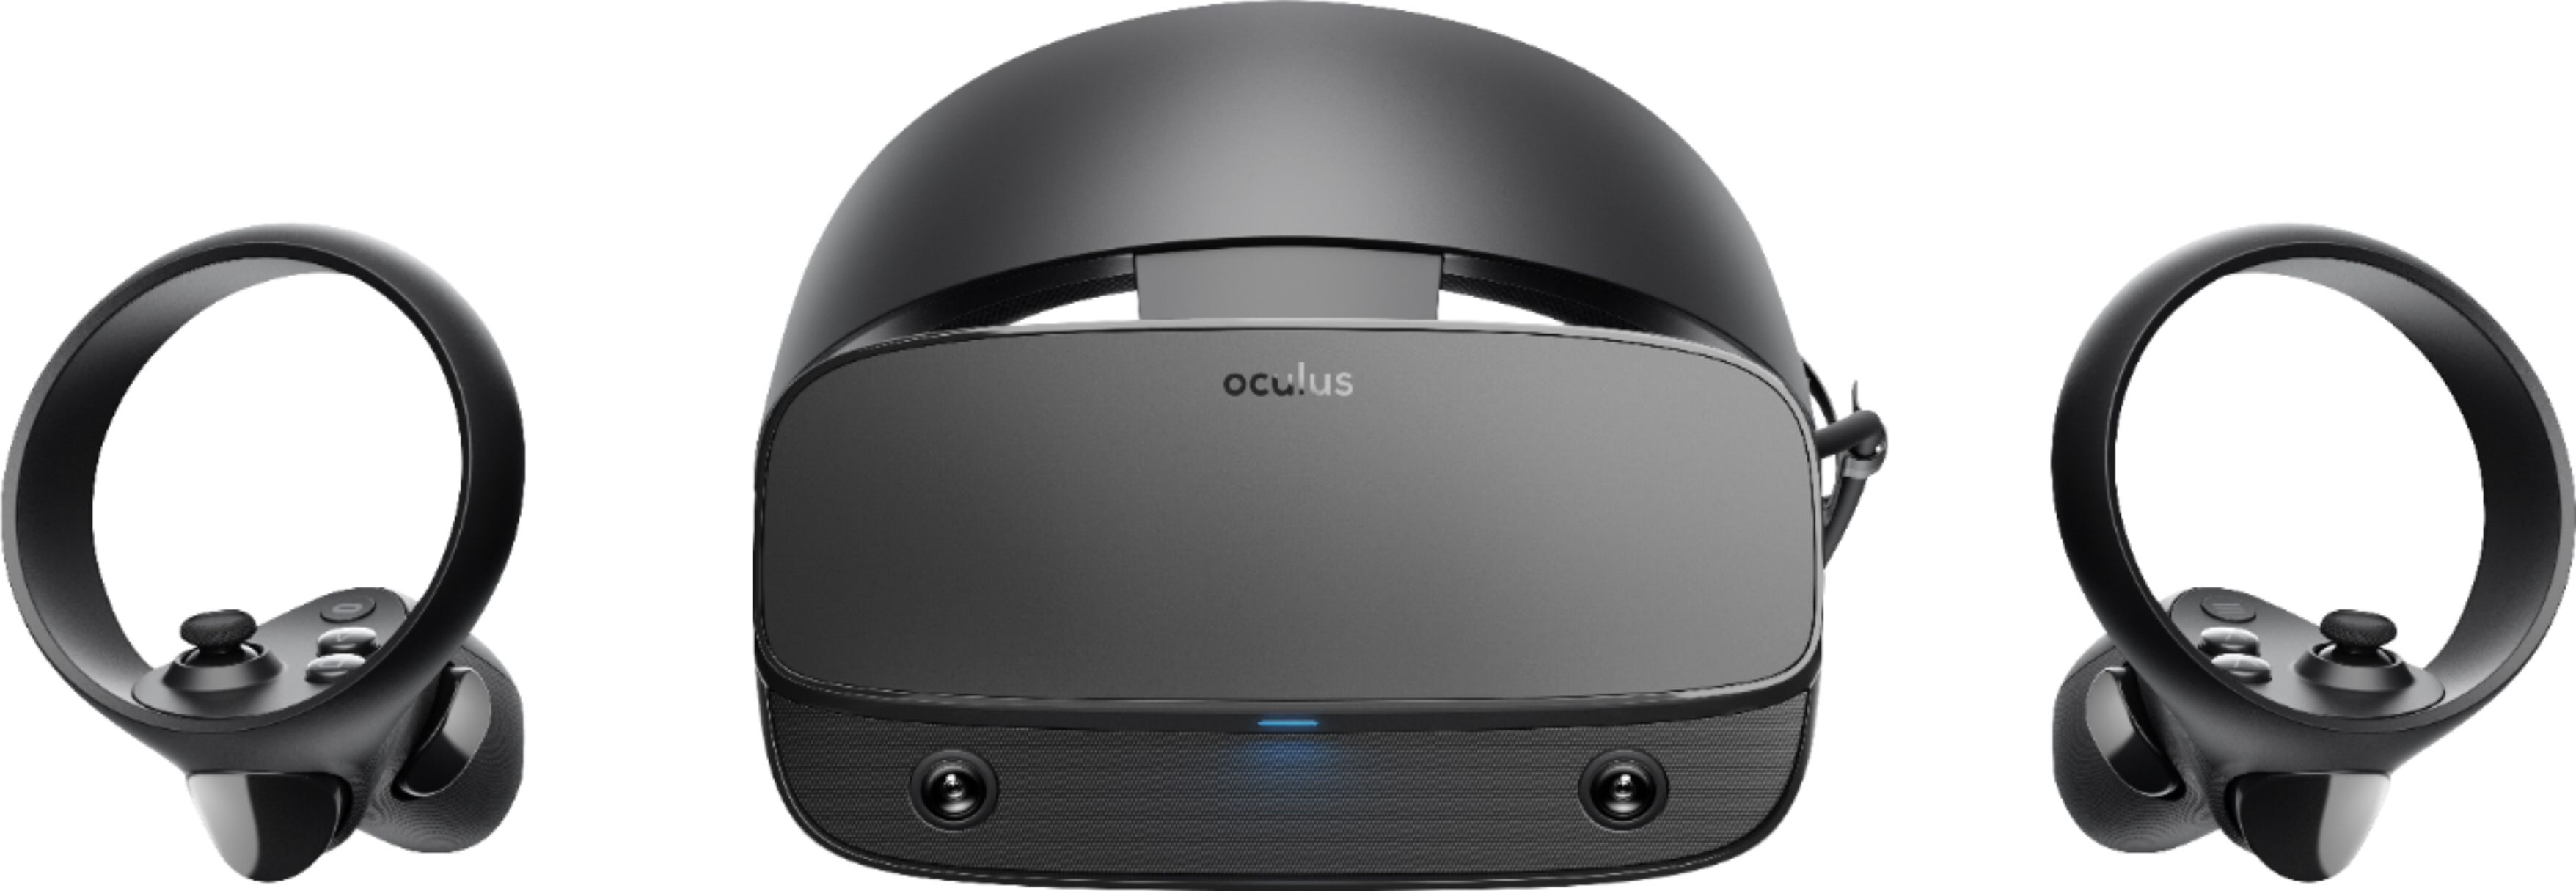 Best Buy: Oculus Rift S PC-Powered VR Gaming Headset Black 301